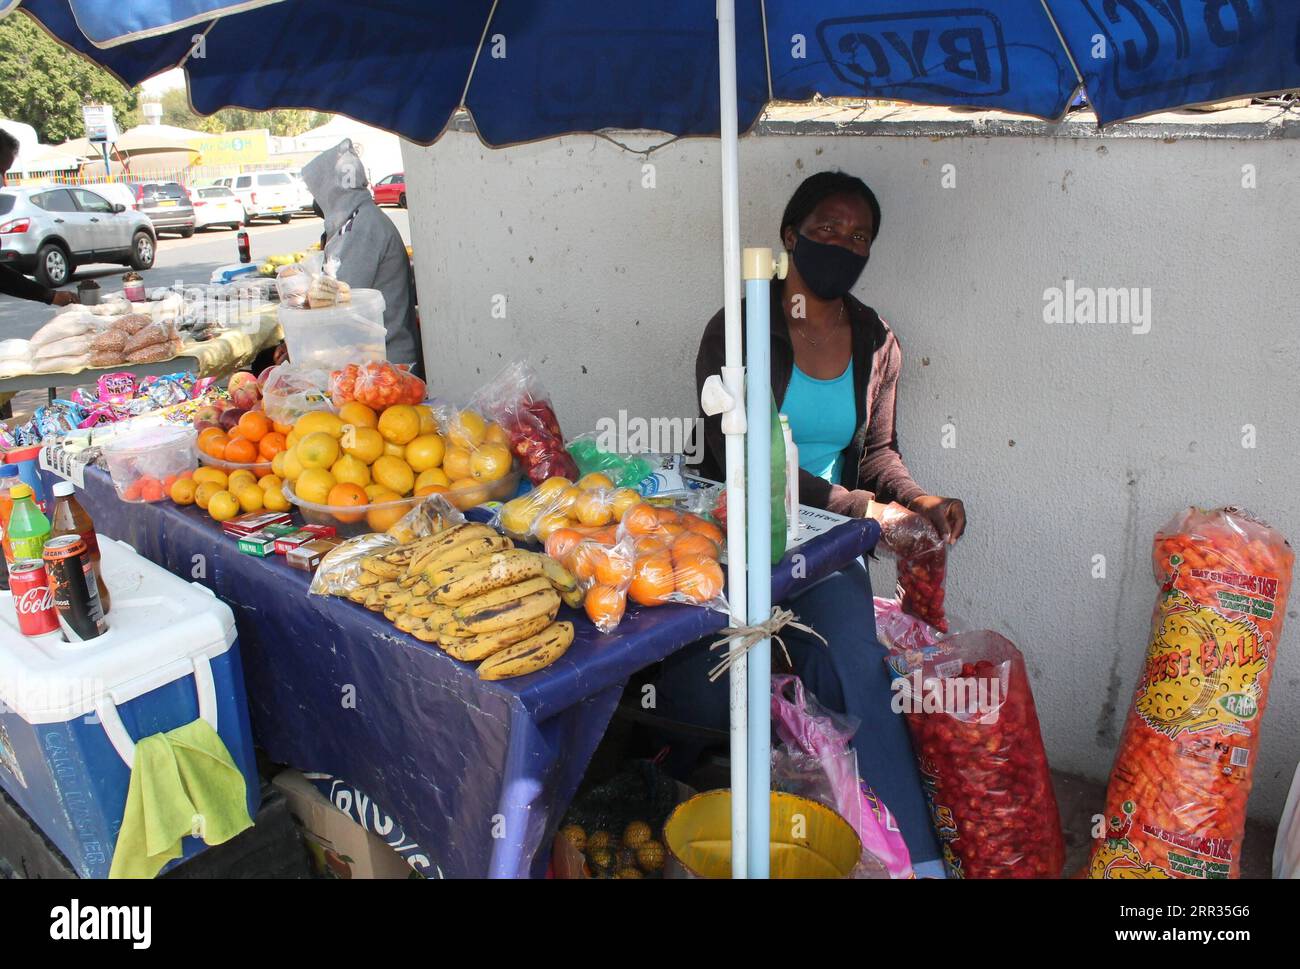 201023 -- WINDHOEK, 23. Oktober 2020 -- Ein Verkäufer, Der eine Gesichtsmaske trägt, verkauft Früchte in Windhoek, Namibia, 22. Oktober 2020. DAZU NOCH: Namibische informelle Händler maximieren die volle Wiedereröffnung der Wirtschaft, um das Geschäft wieder anzukurbeln NAMIBIA-WINDHOEK-COVID-19-ECONOMY NdalimpingaxIita PUBLICATIONxNOTxINxCHN Stockfoto